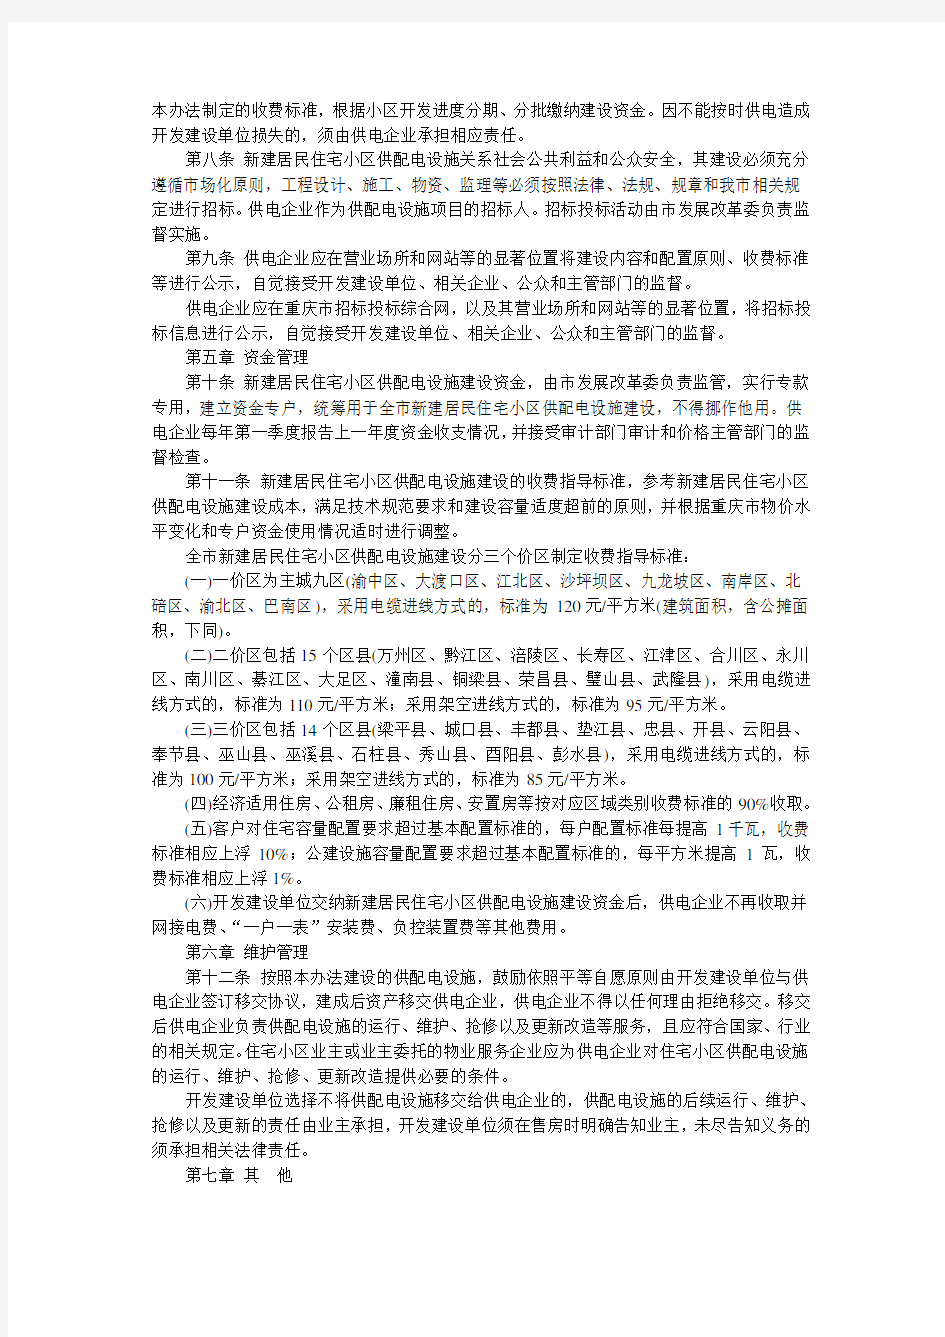 重庆市新建居民住宅小区供配电设施建设管理办法2013